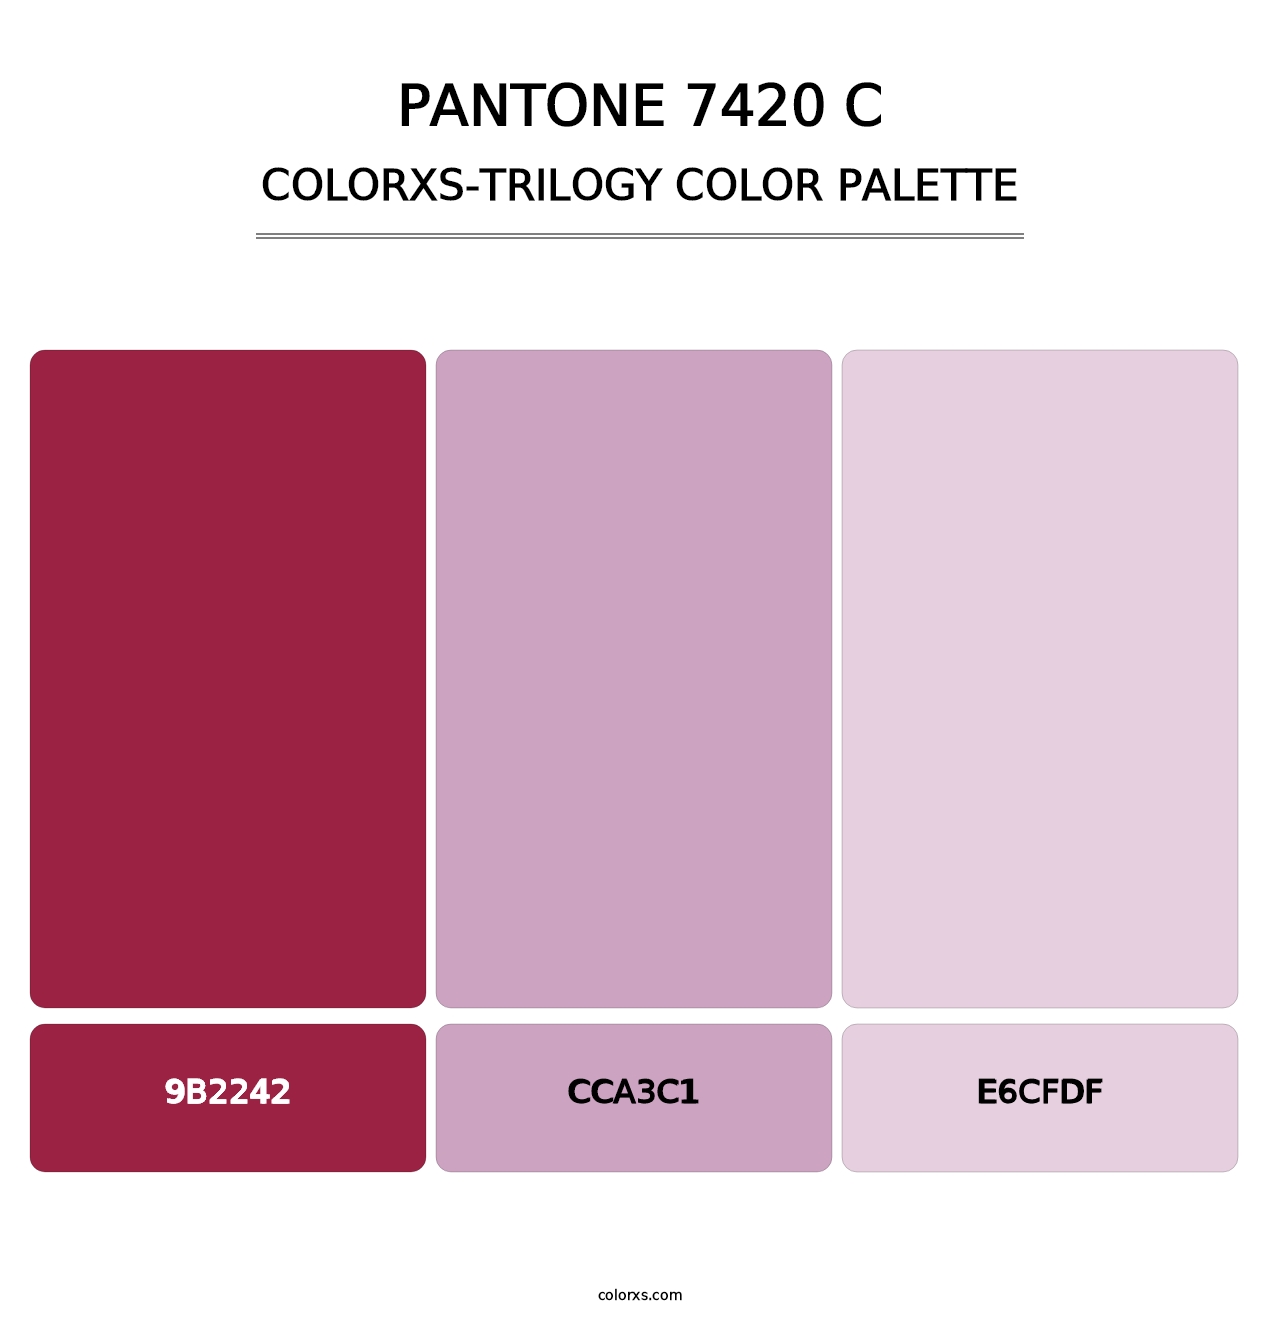 PANTONE 7420 C - Colorxs Trilogy Palette